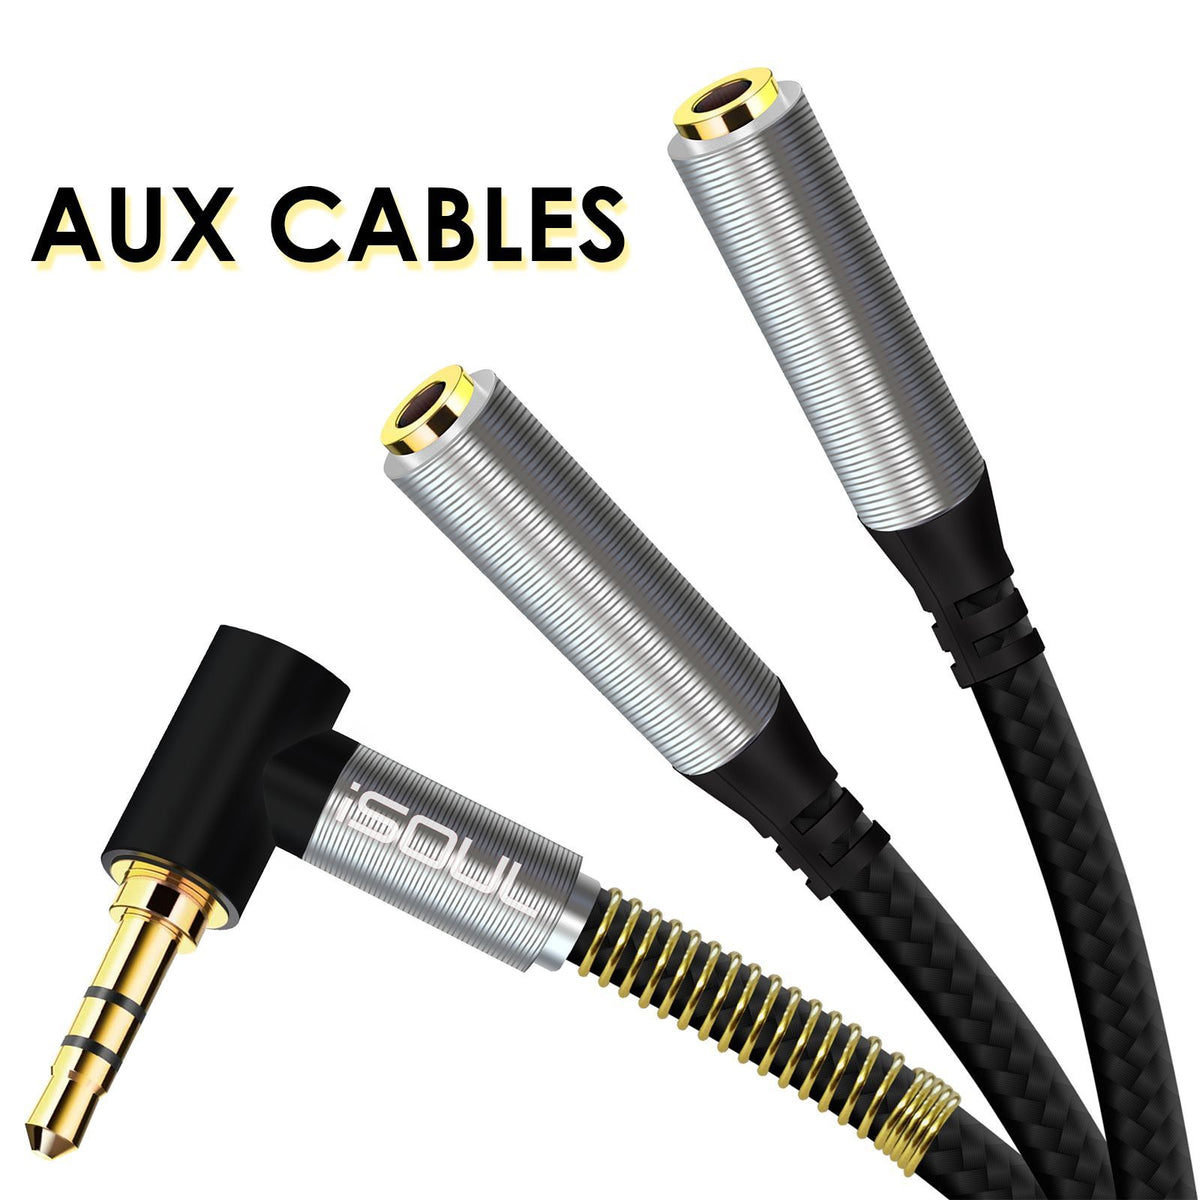 Cable auxiliar plug a plug 3.5 – AUX40 – Audiobahn